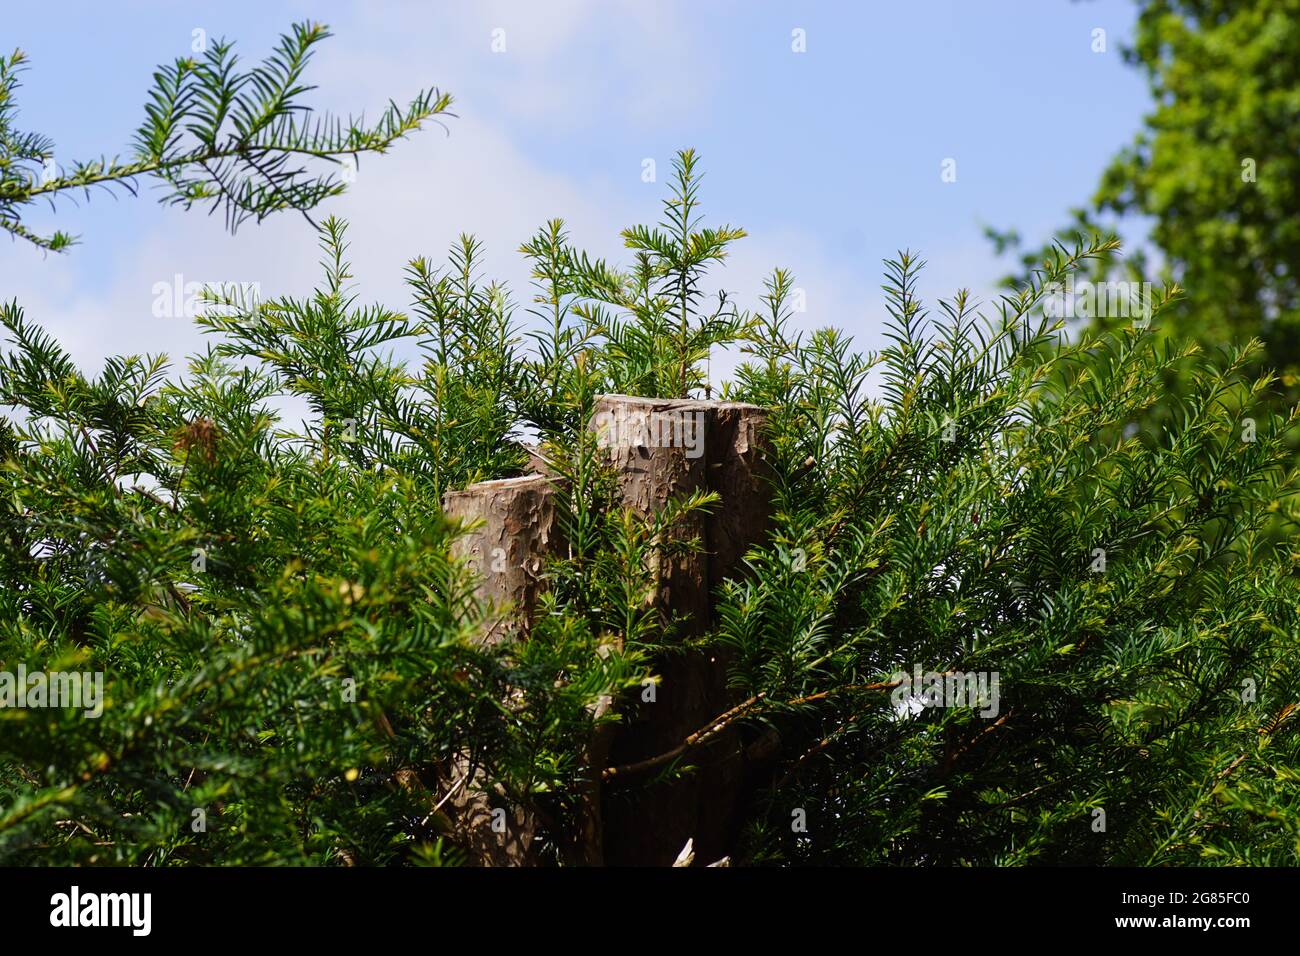 Sommet d'une haie à grand if (Taxus baccata) avec un tronc raccourci dans un jardin hollandais. Été, juillet. Banque D'Images